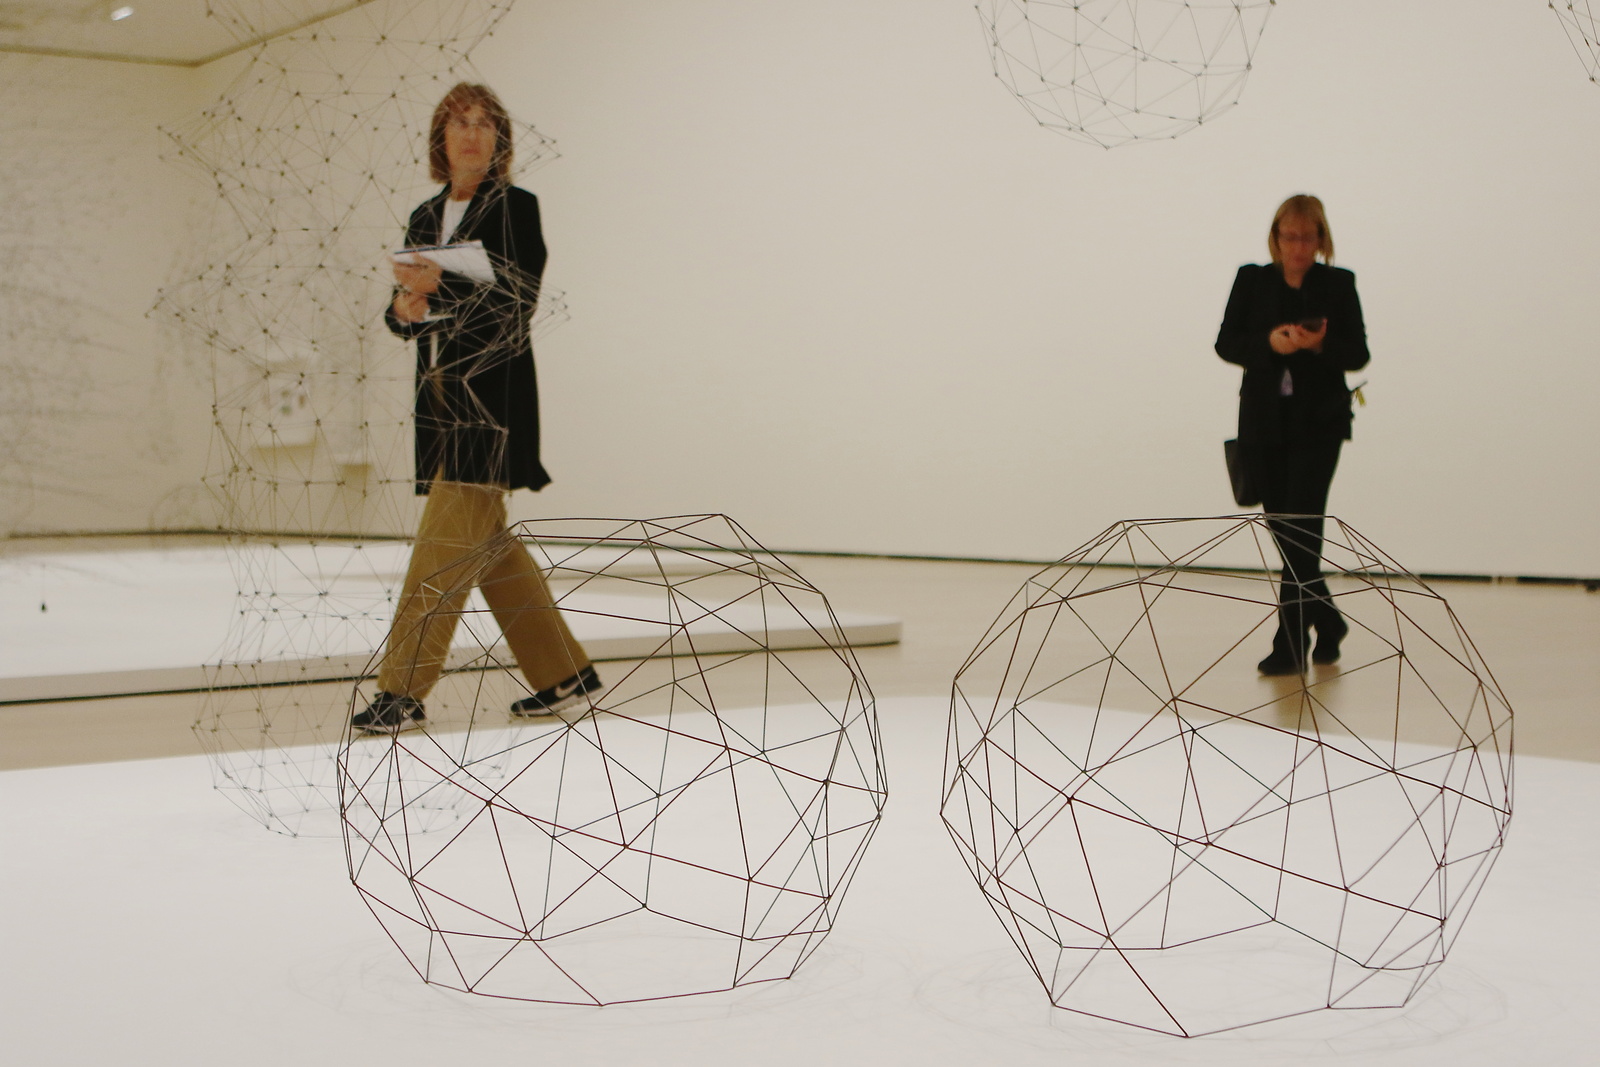 Esculturas abiertas y transparentes, redes que cuelgan en el aire. Así era la obra de Gego. 